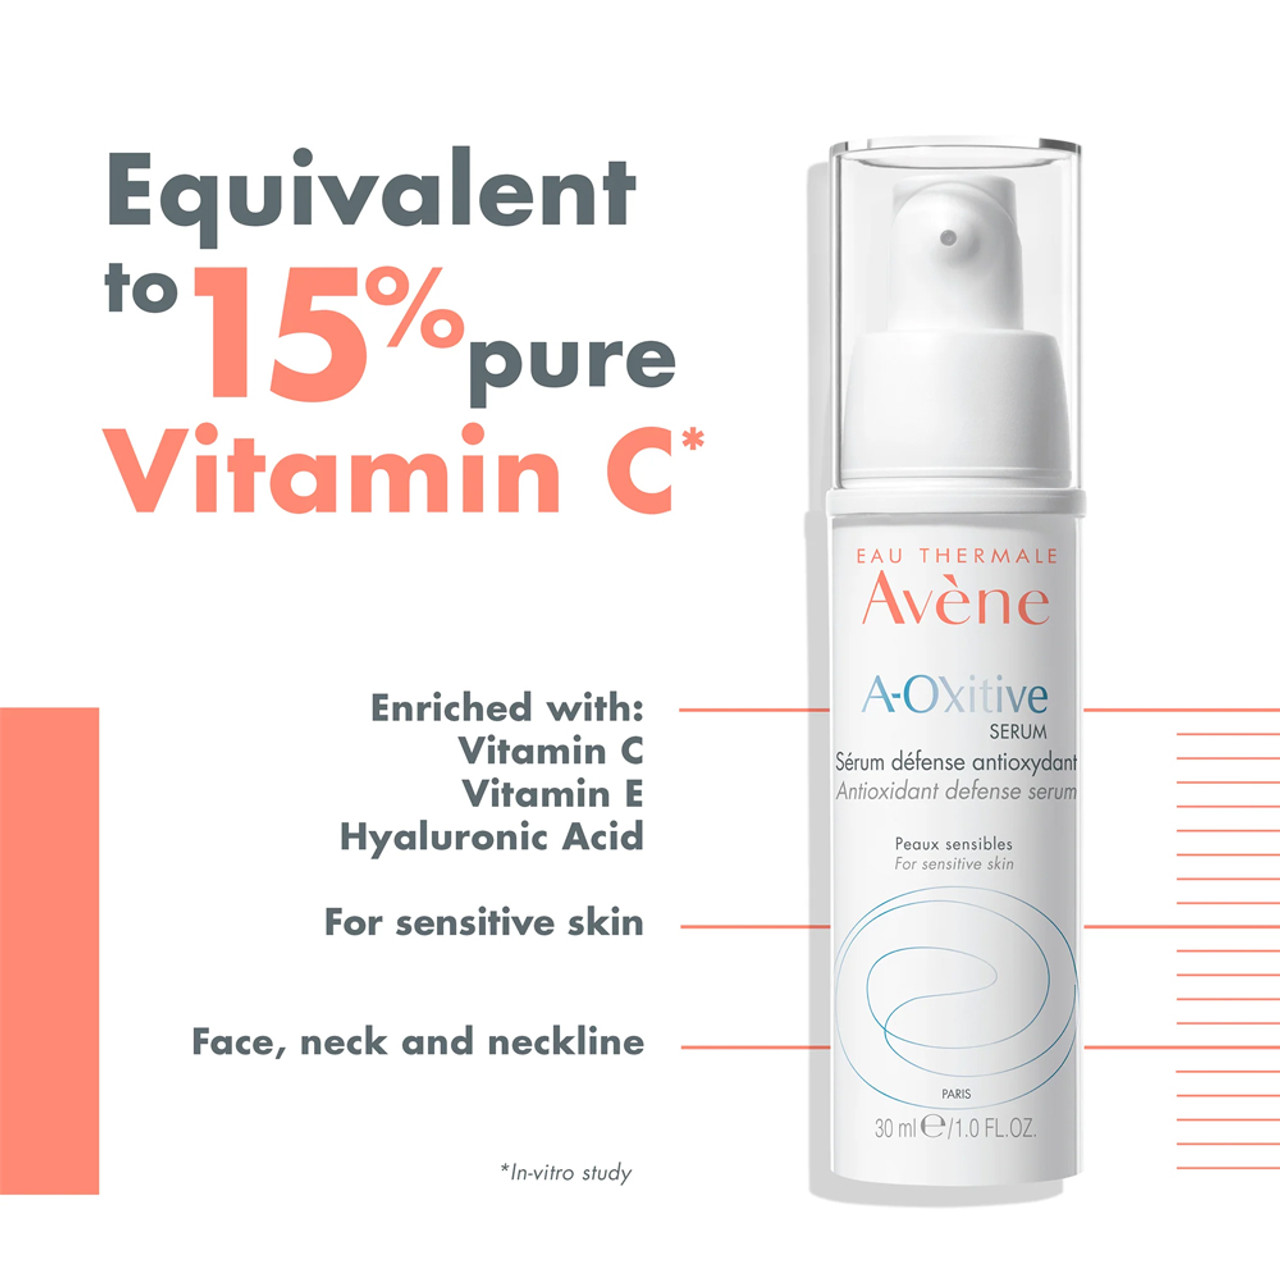 Avene A-Oxitive Antioxidant Defense Serum BeautifiedYou.com